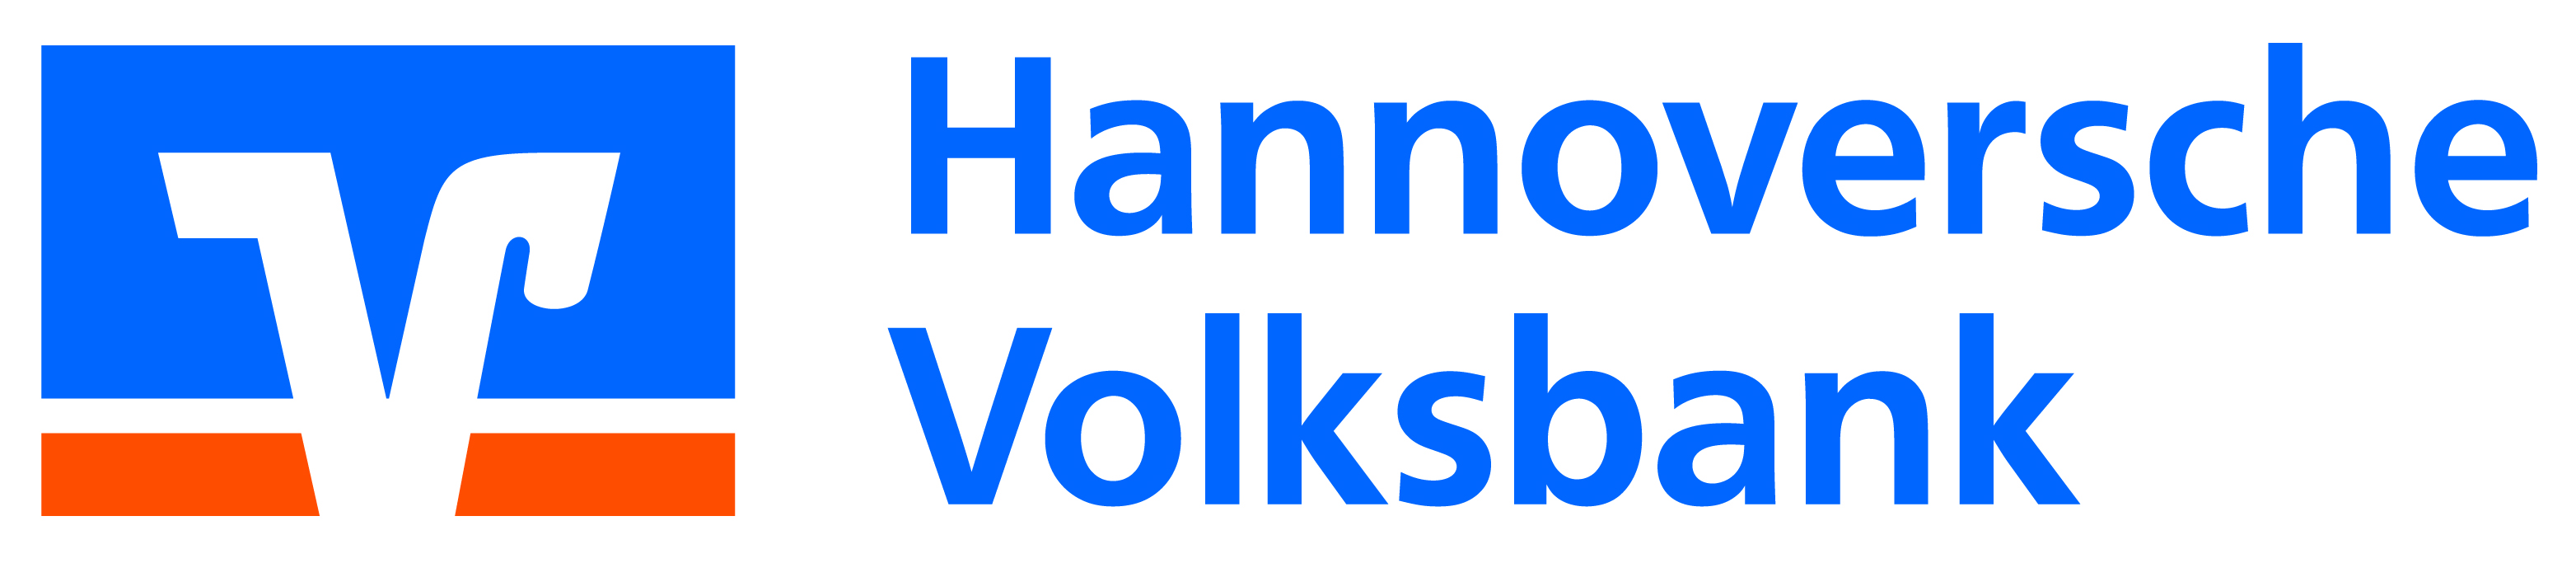 Hannoversche_Volksbank